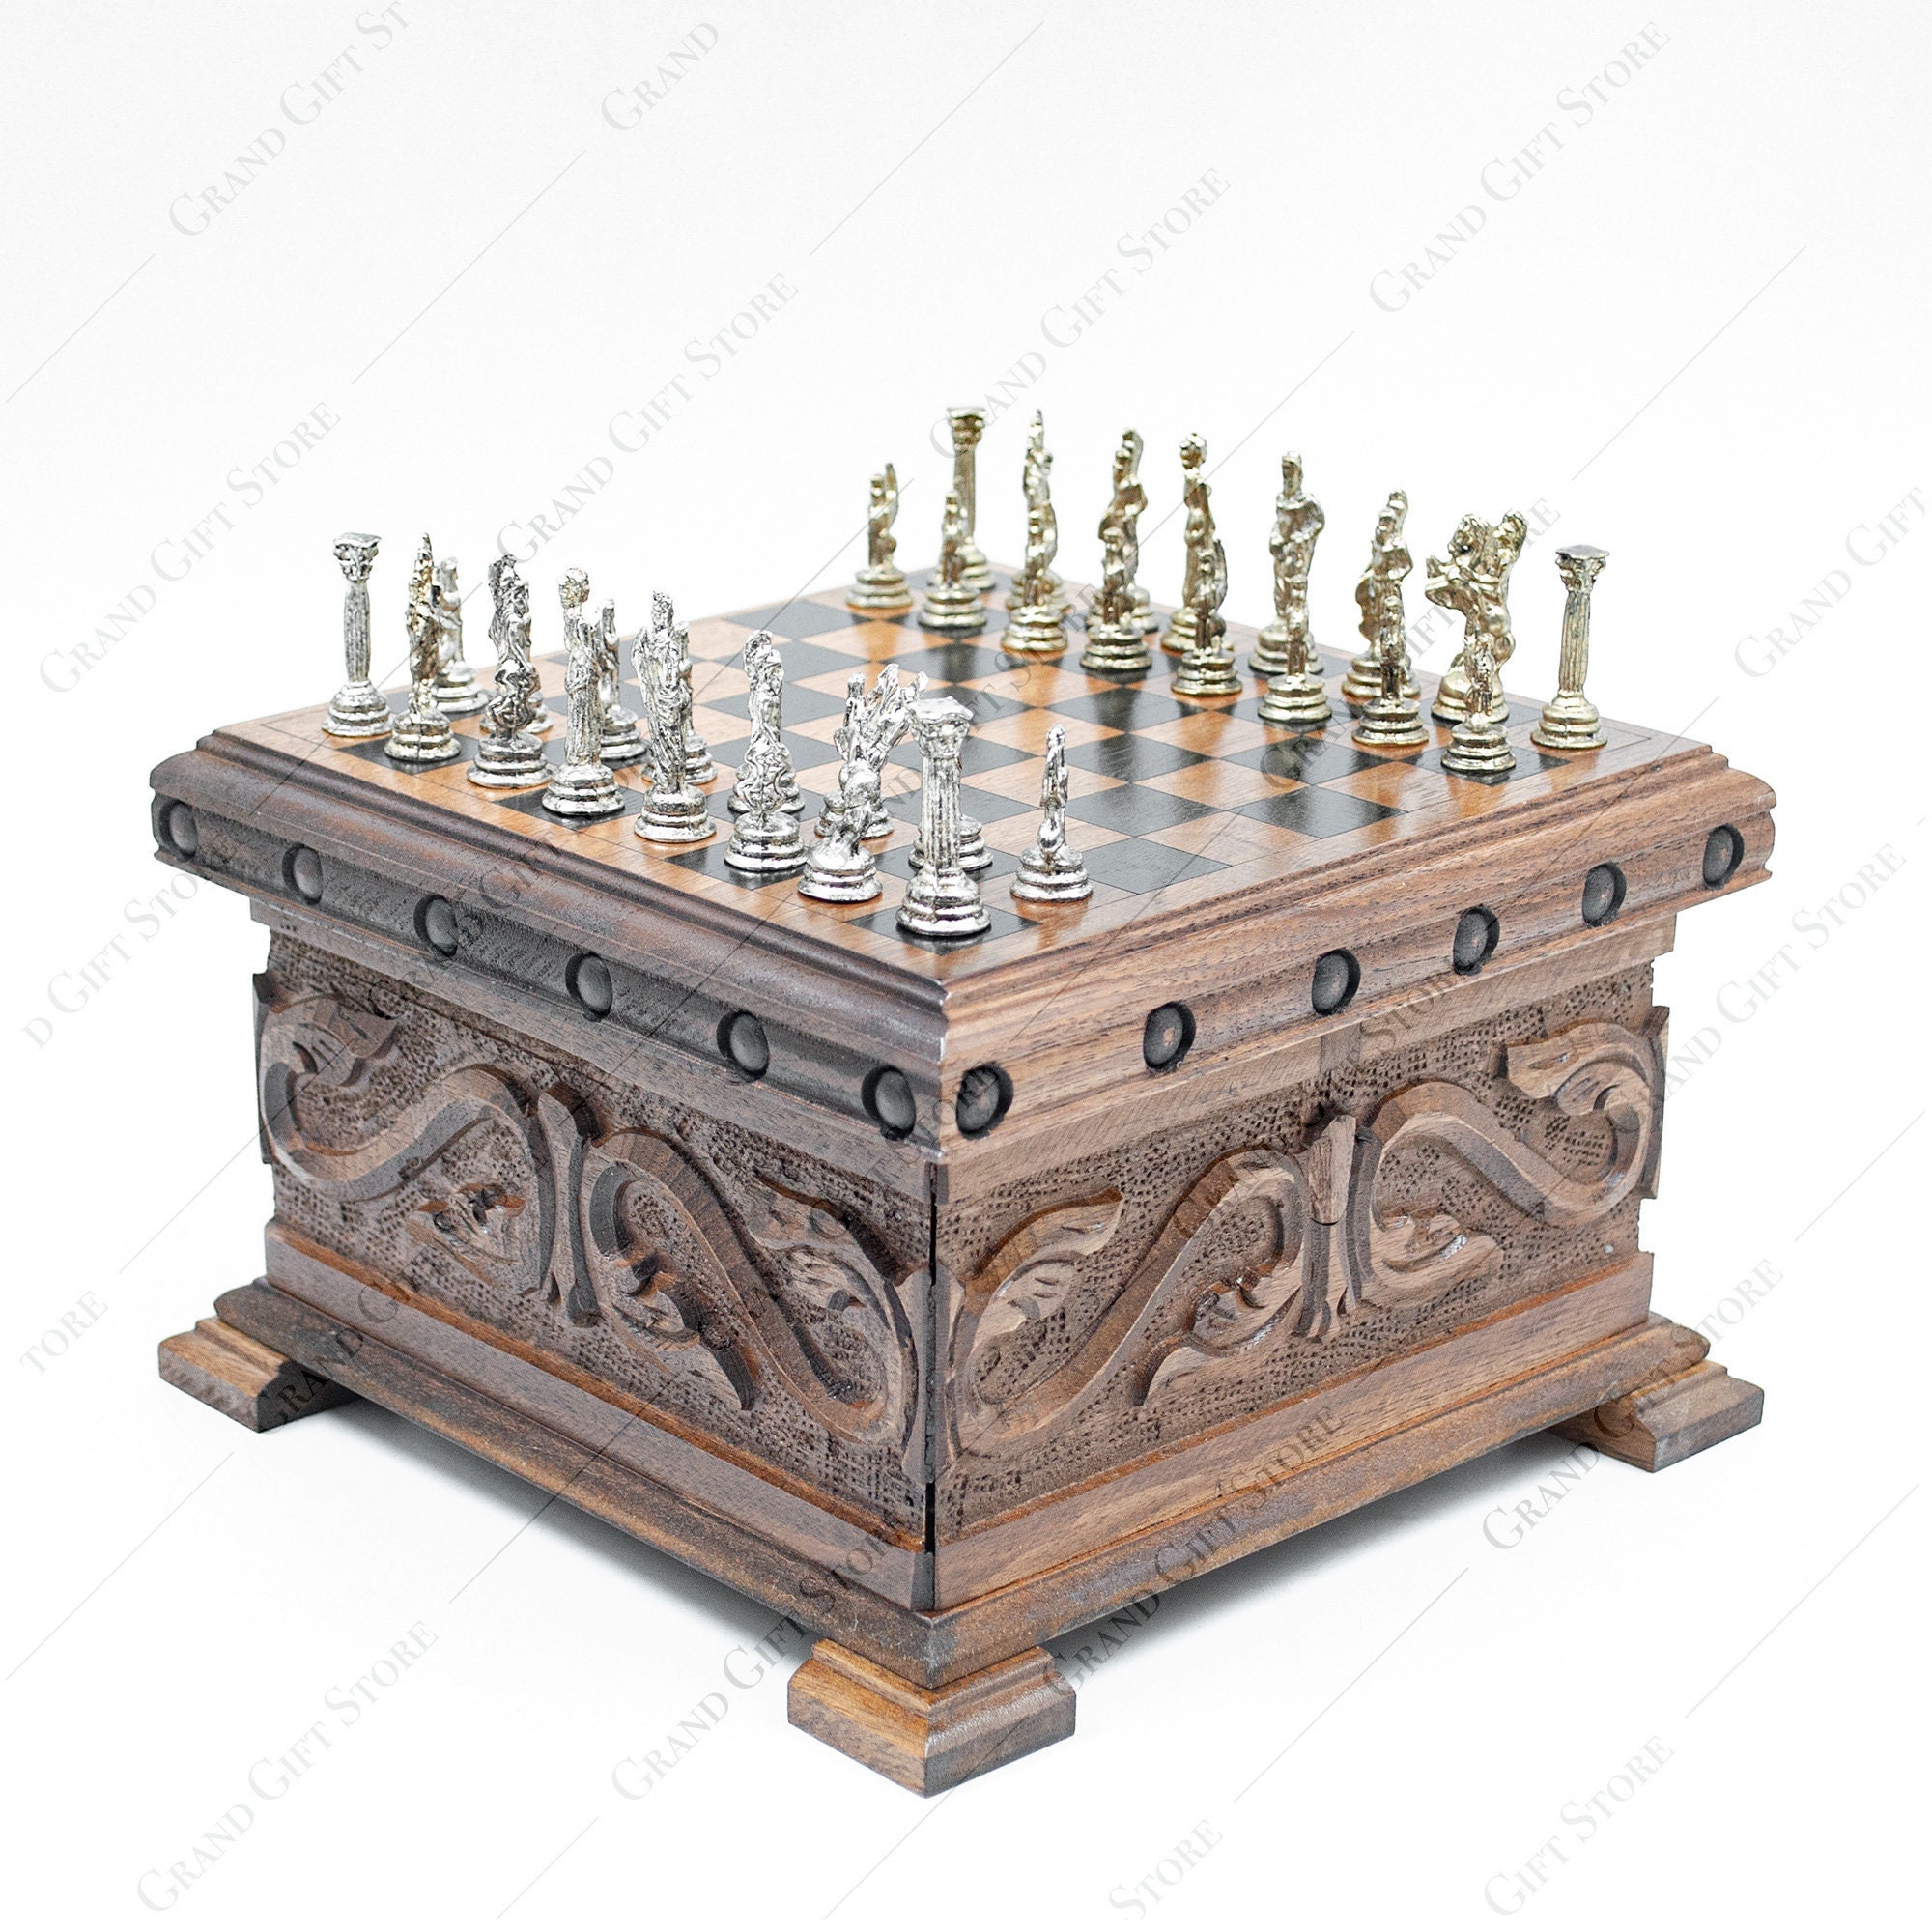 Jogo de Tabuleiro DIVERCENTRO Harry Potter Chess Set Wizards